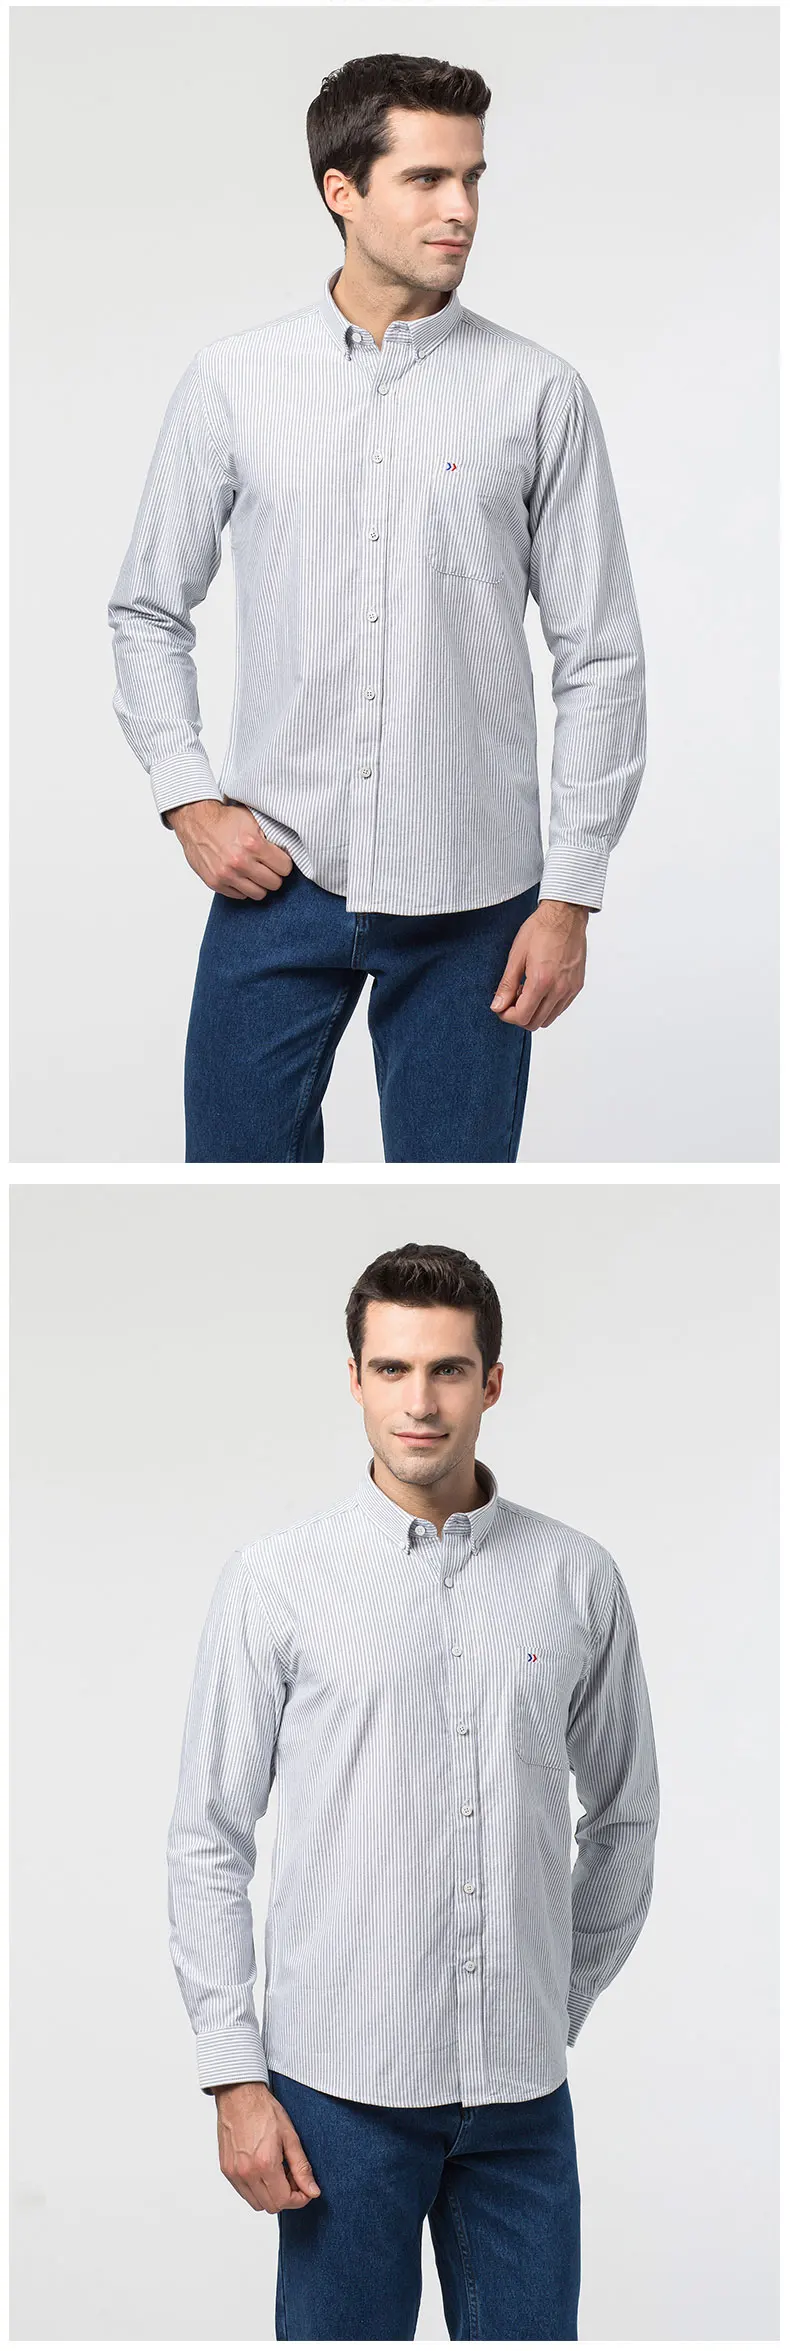 100% хлопок 2018 новые мужские в полоску повседневные платья рубашки Демисезонный с длинным рукавом Slim Fit Мужской Блузка Высокое качество